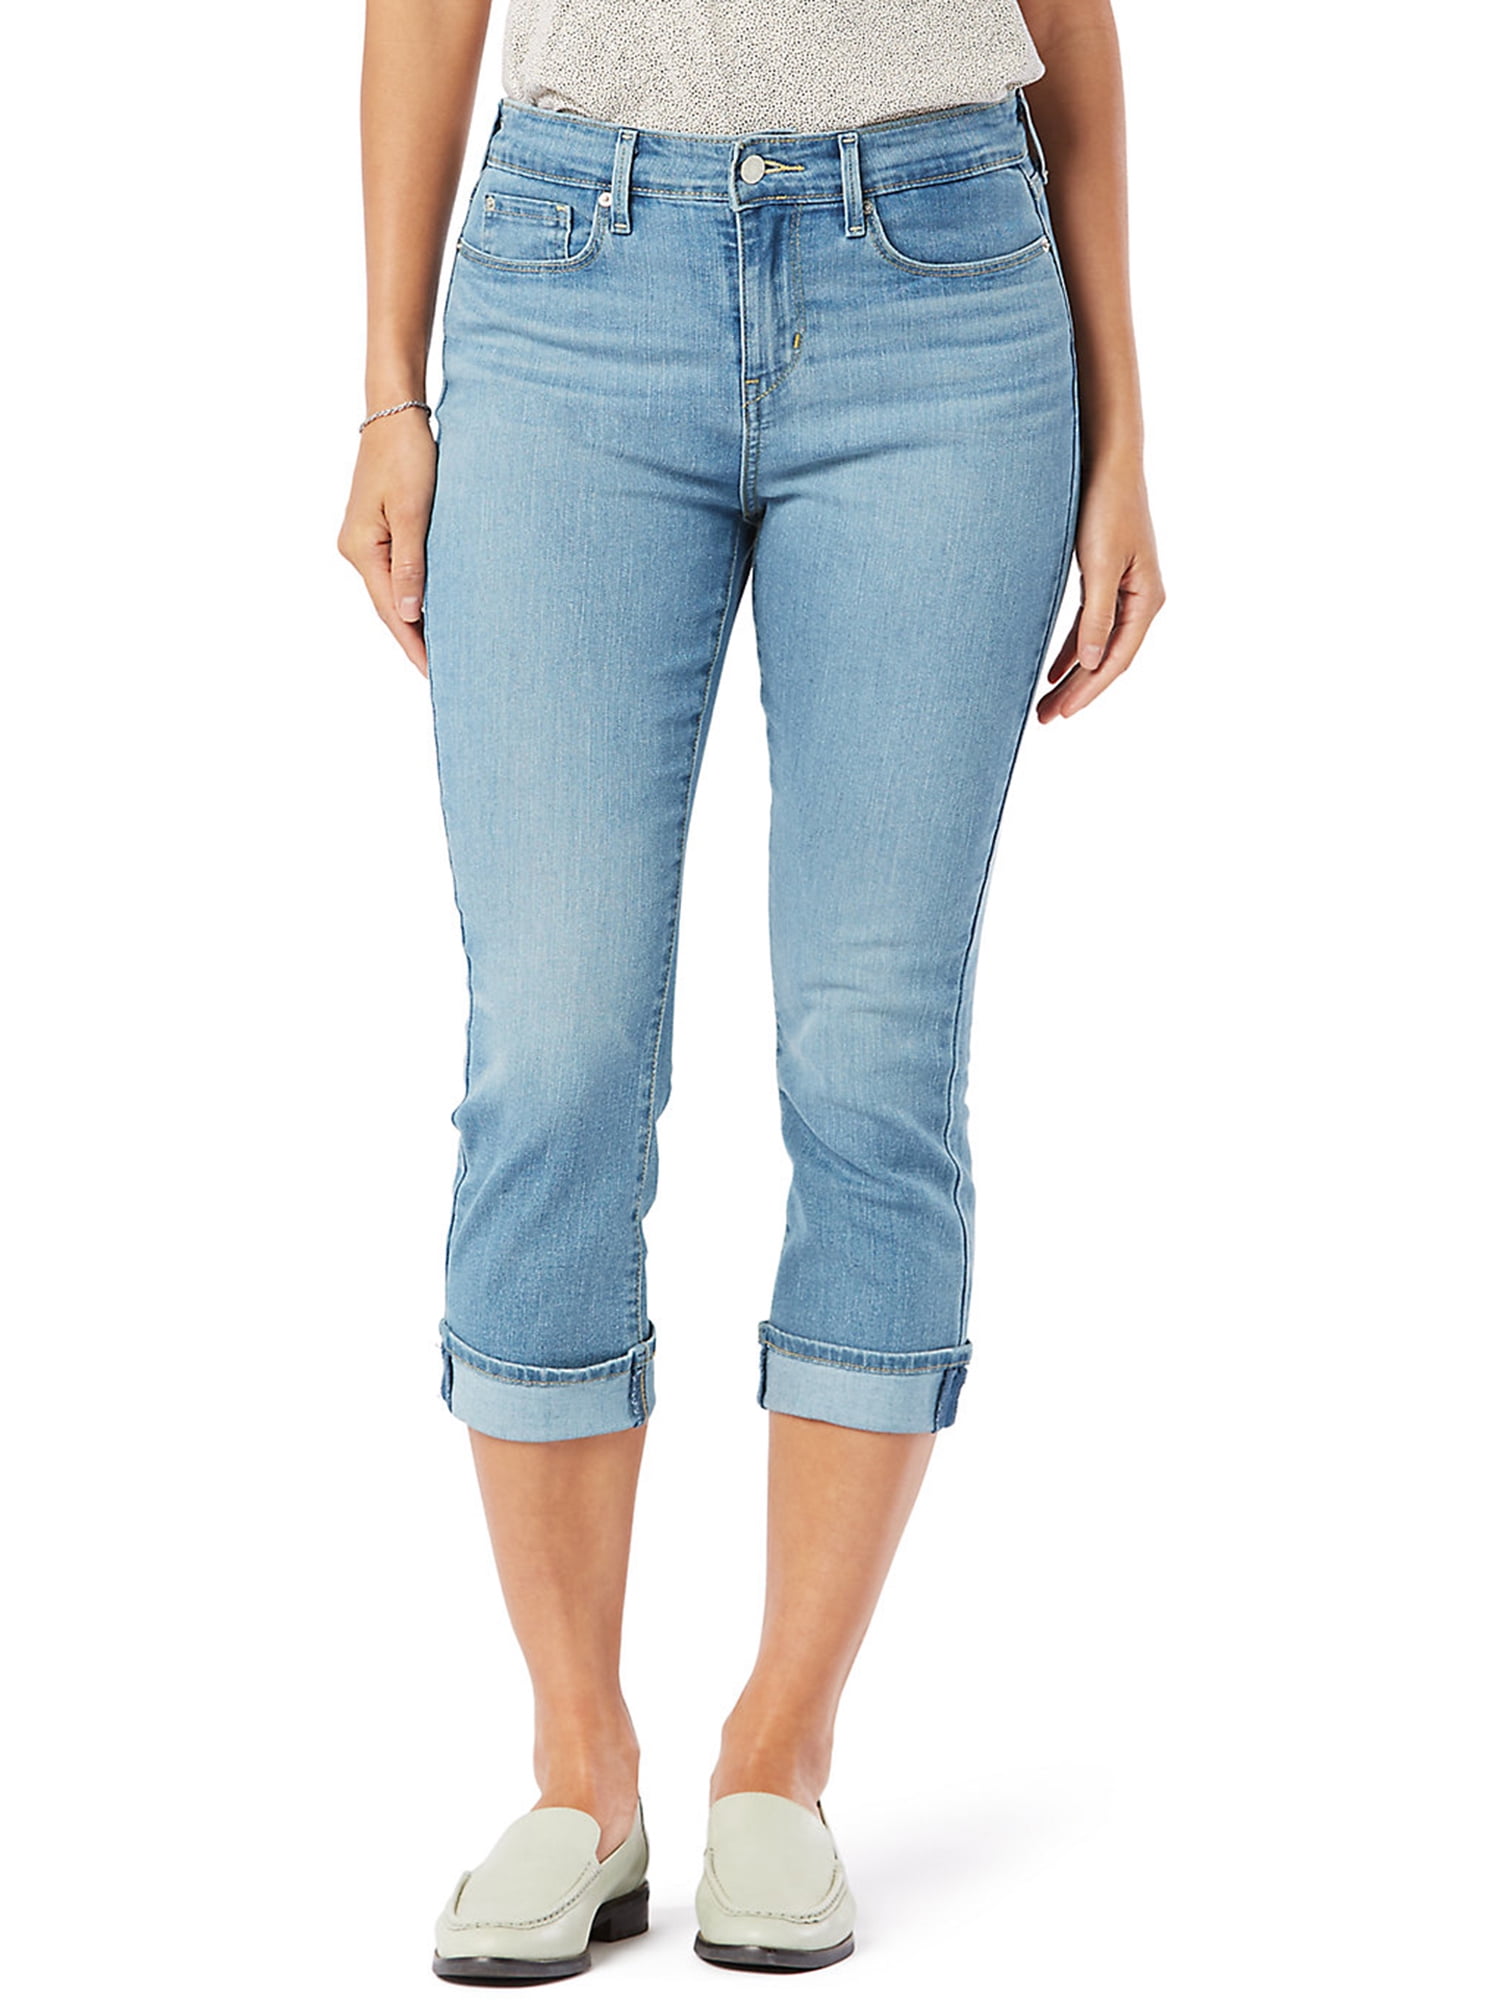 M2F Brand Denims Womens Cotton Mid Rise Zip Up Jeans Capris Beige